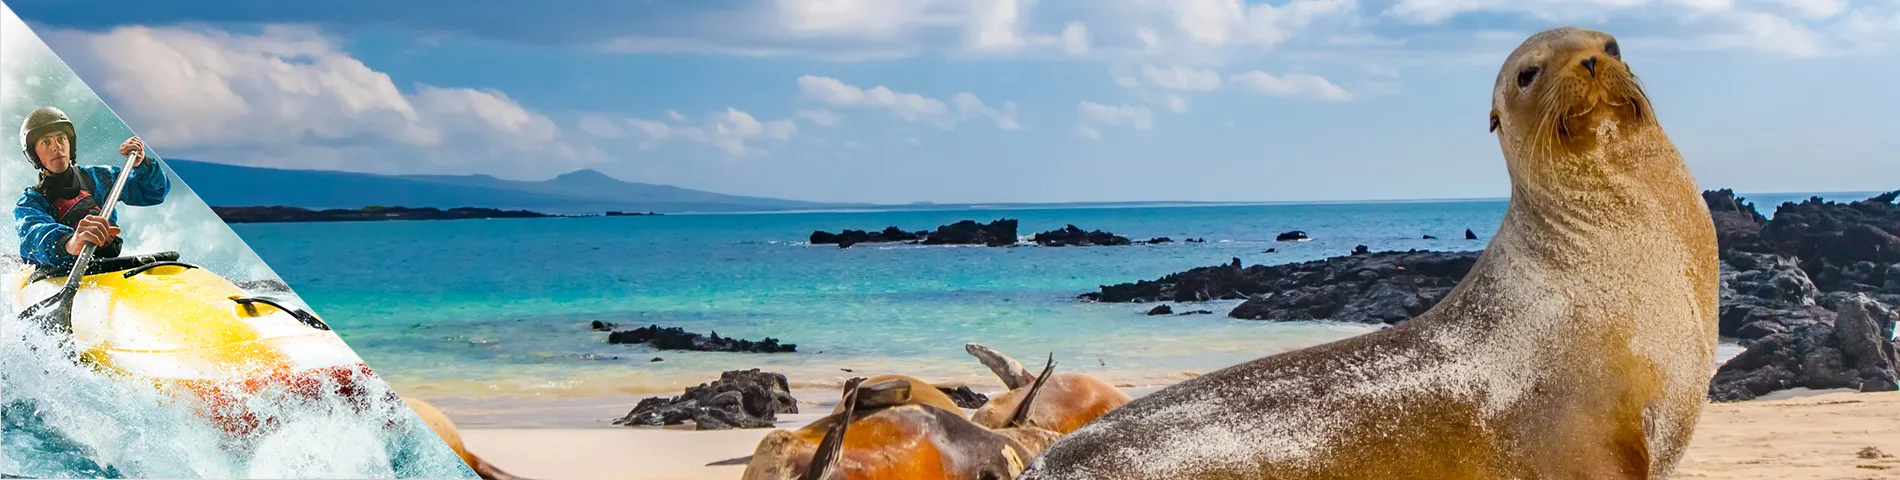 جزر غالاباغوس - اللغة و رياضات مغامرة